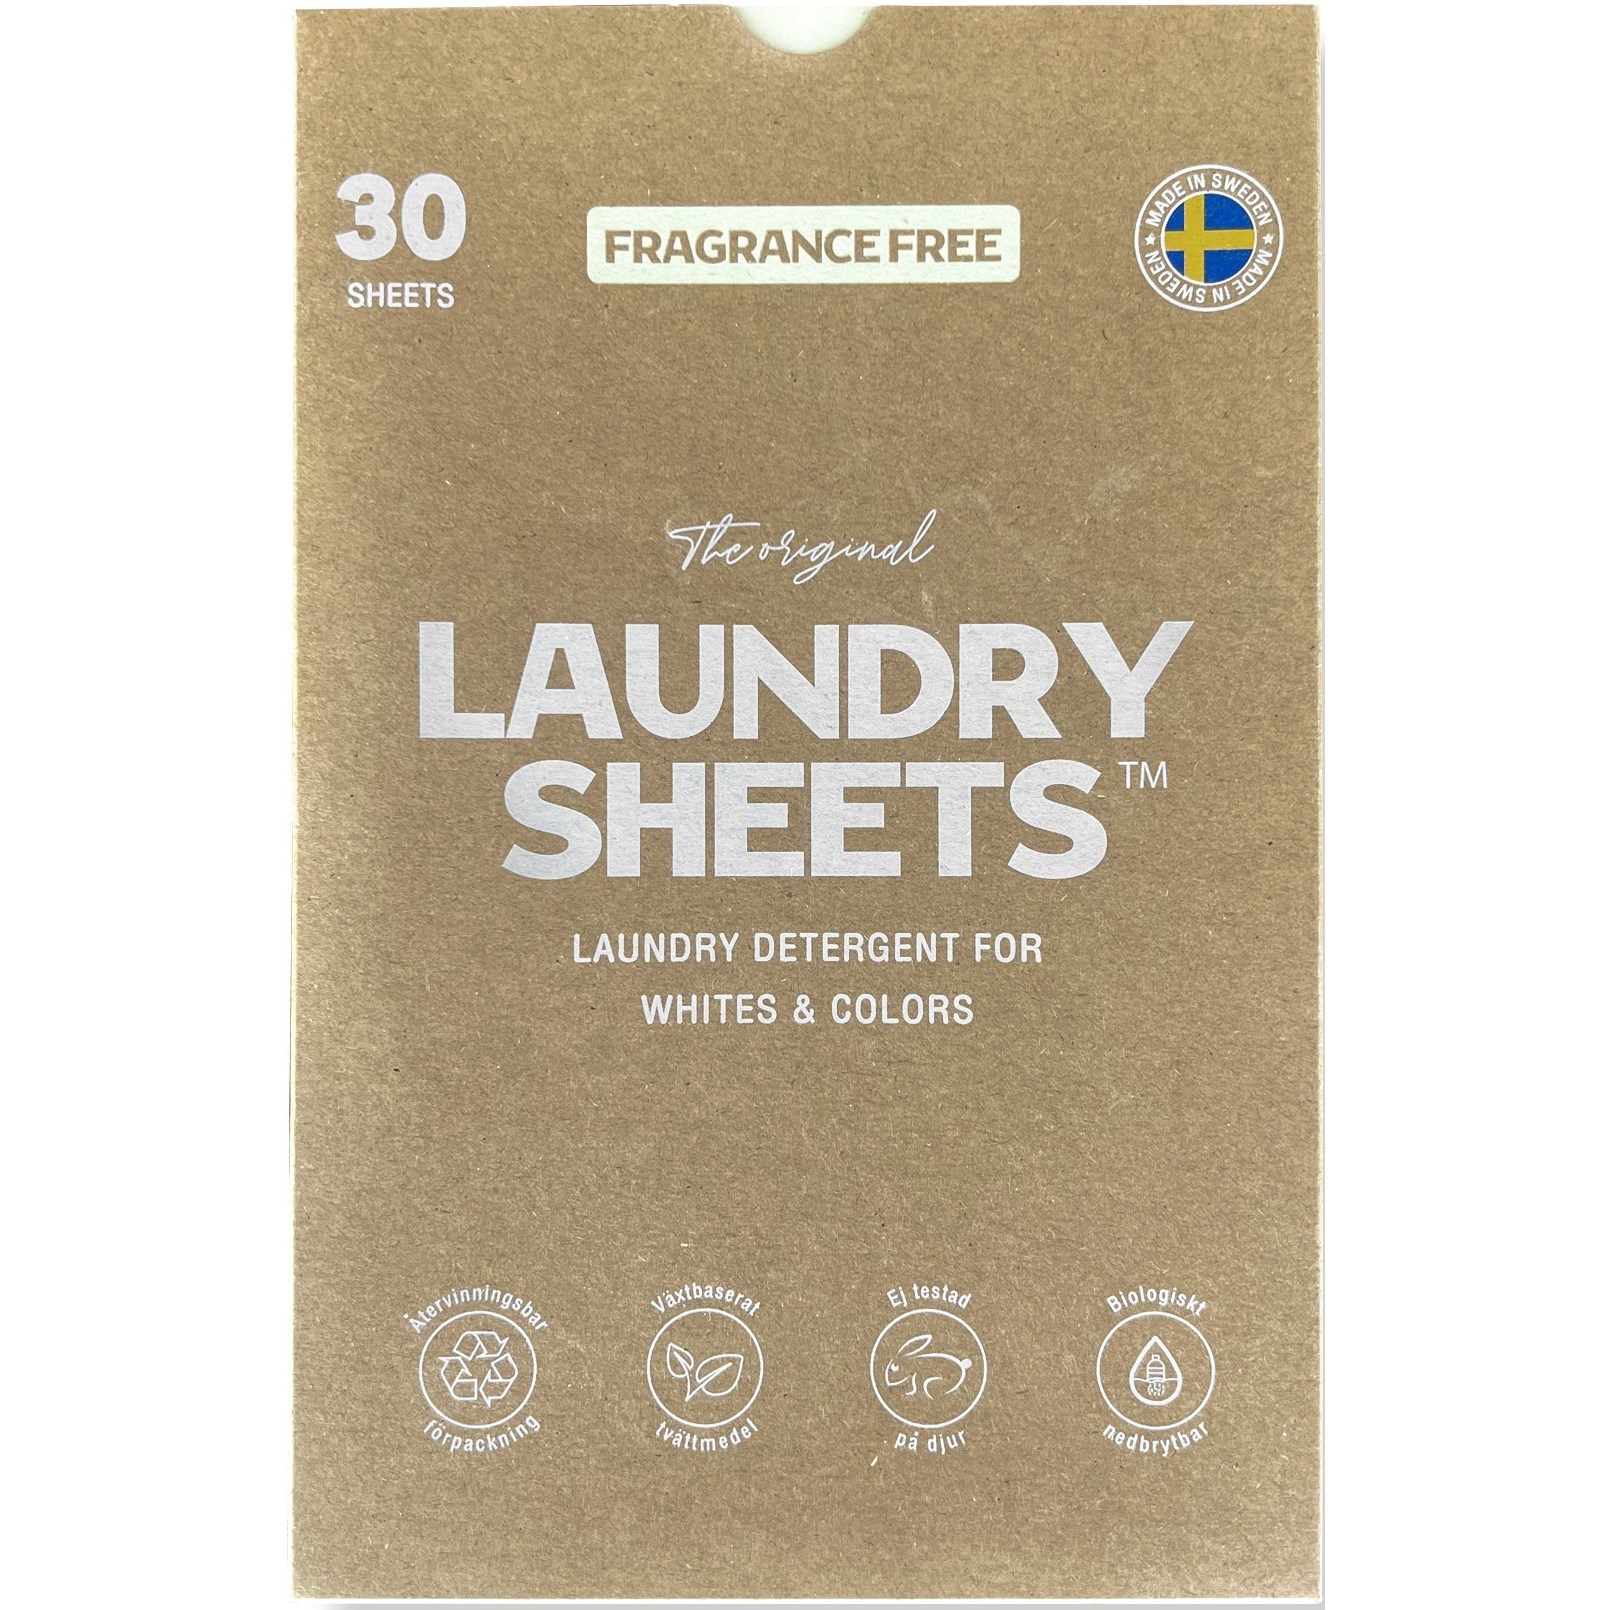 Bilde av Laundry Sheets Laundry Detergent Fragrance Free 30 Sheets 30 Stk